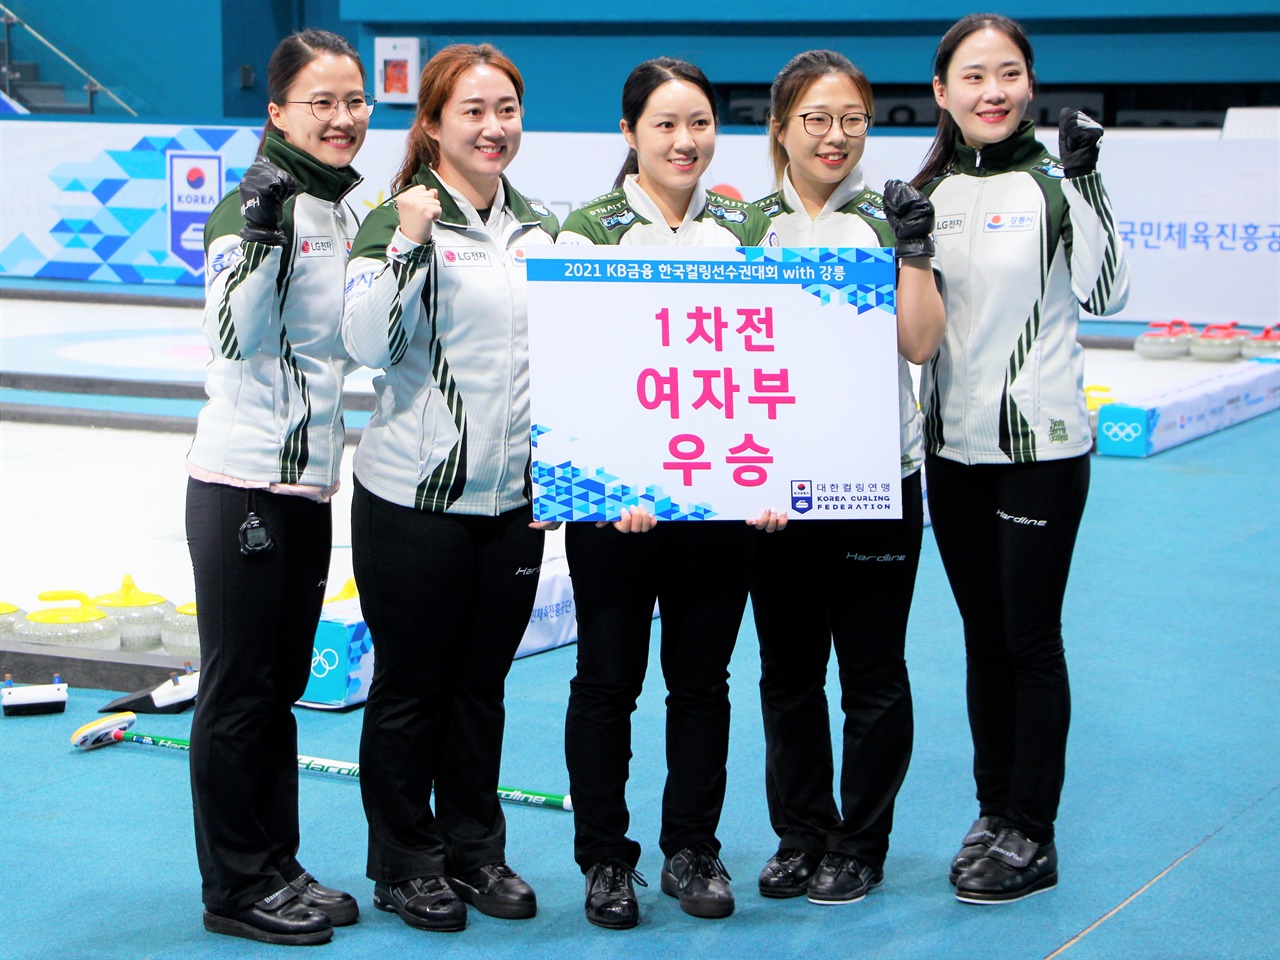  2021 KB금융 한국컬링선수권대회 1차 결승에서 우승한 강릉시청 컬링팀(통칭 '팀 킴' 선수들이 기념사진을 촬영하고 있다.